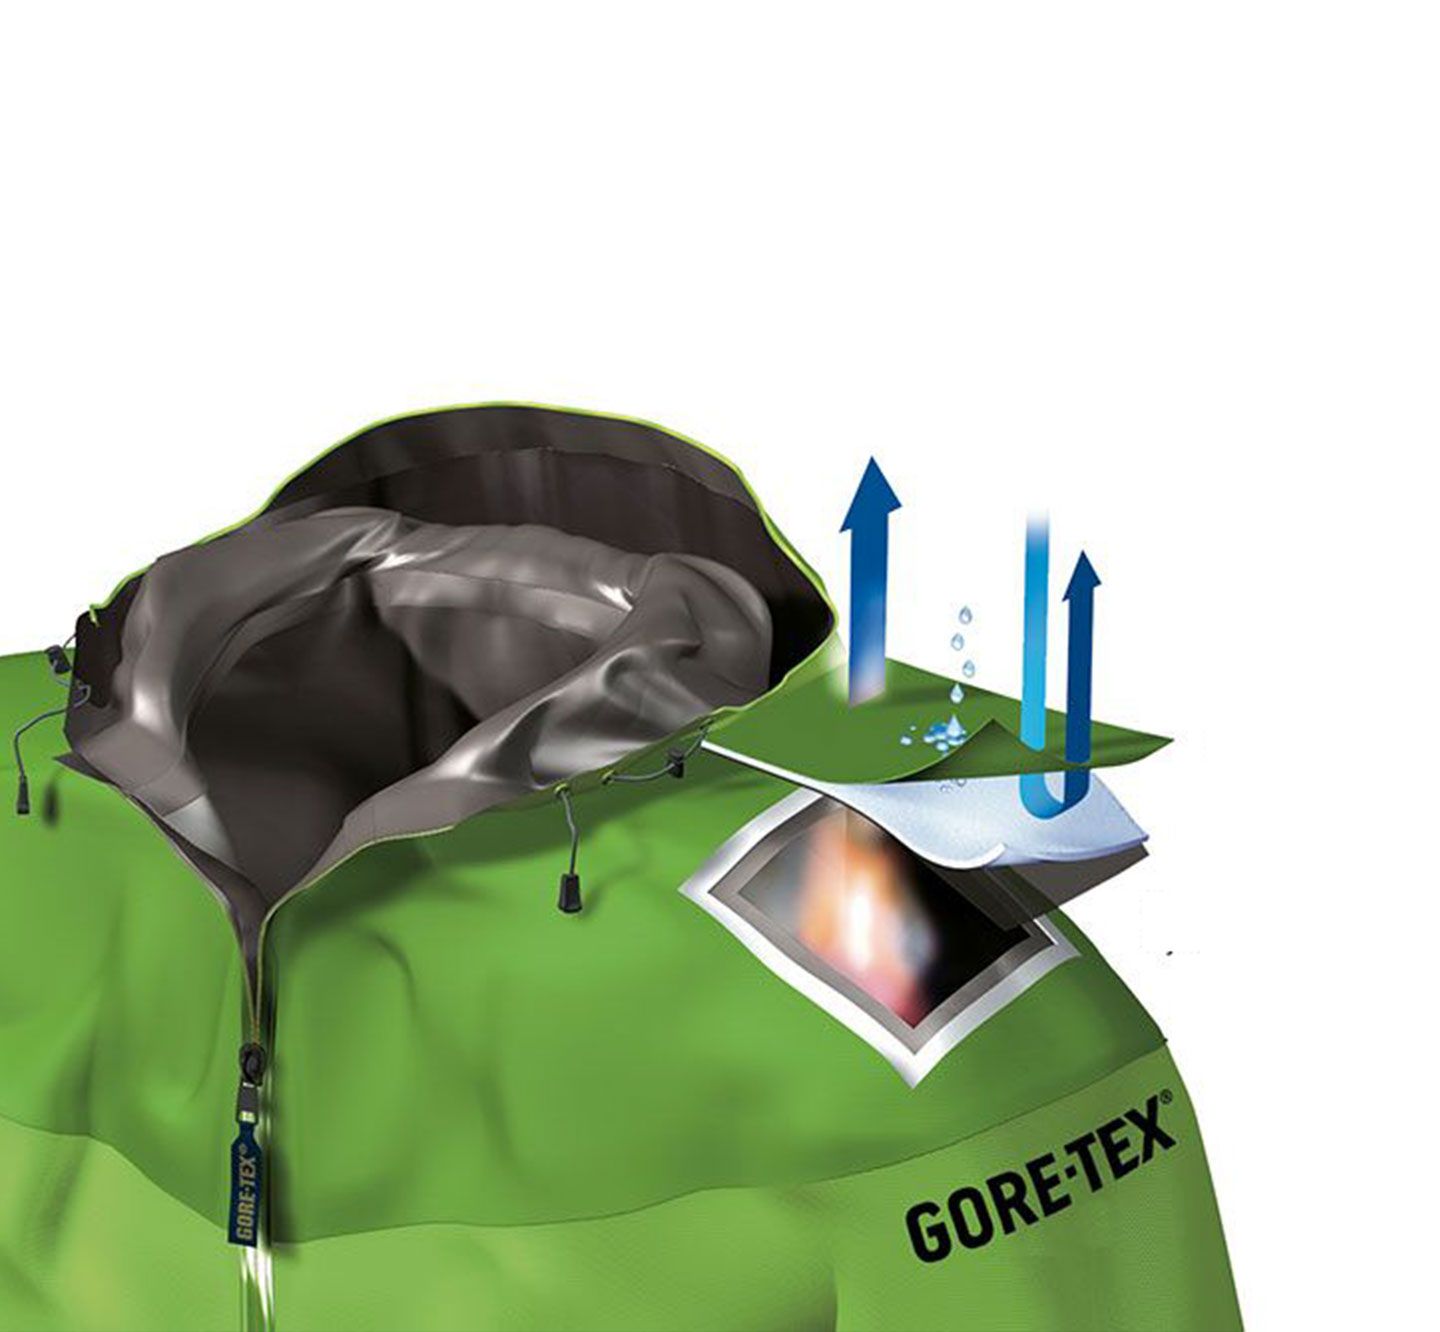 GORE-TEX Waterproof & Windproof Outerwear Technology | Marmot